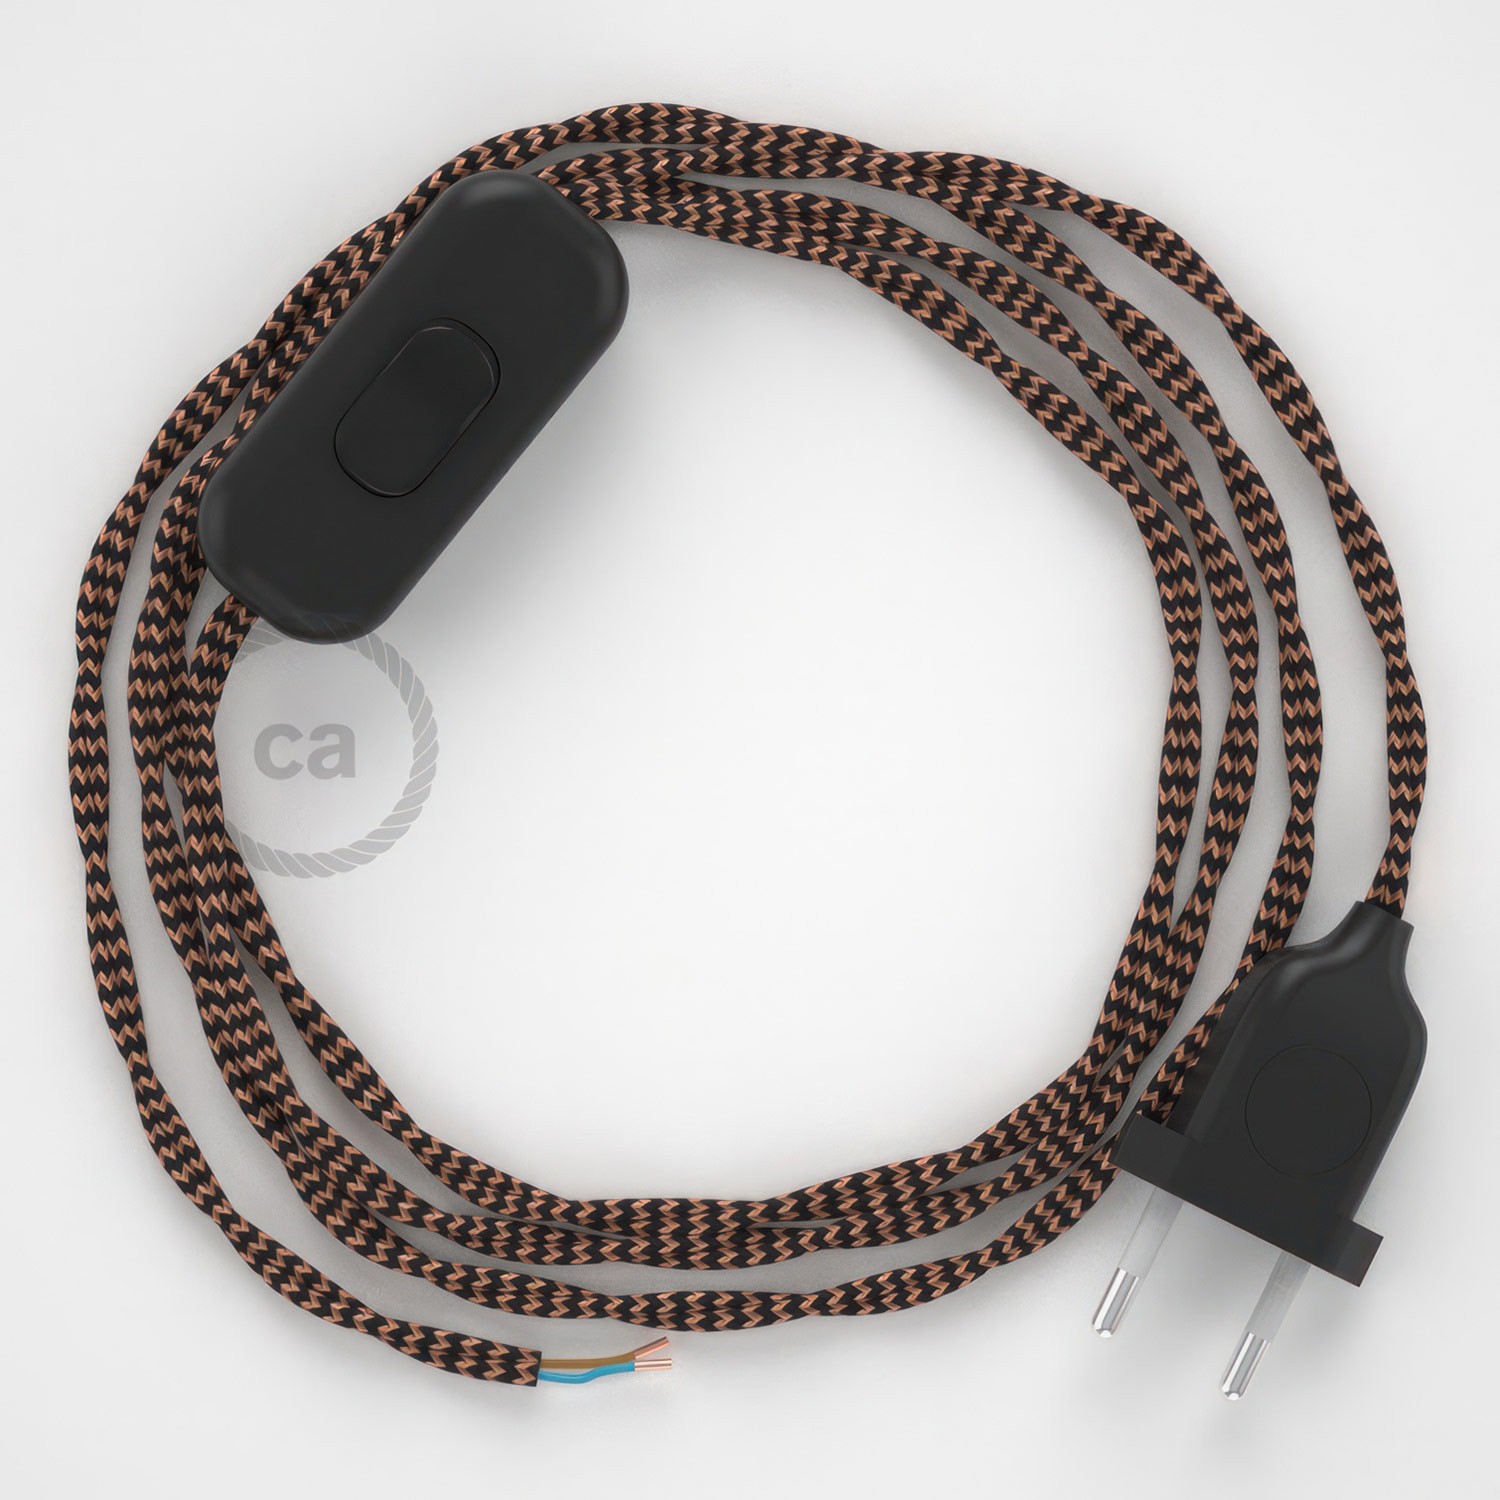 Cableado para lámpara, cable TZ22 Efecto Seda Negro y Whisky 1,8m. Elige tu el color de la clavija y del interruptor!